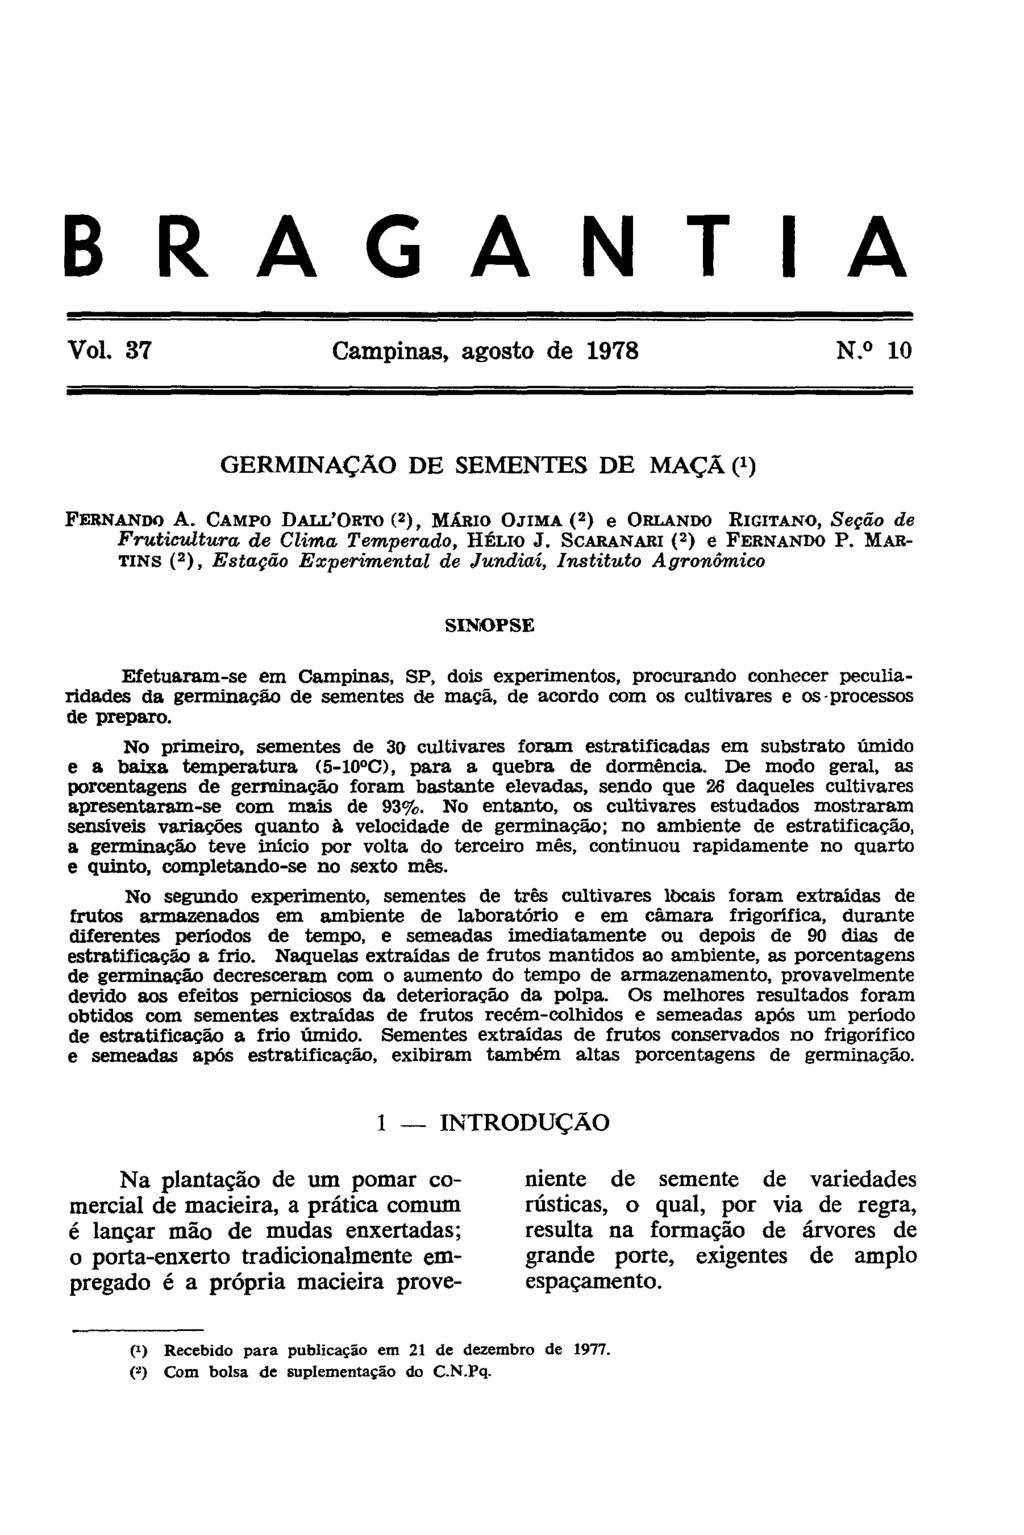 GERMINAÇÃO DE SEMENTES DE MAÇÃ ( 1 ) FERNANDO A. CAMPO DALL'ORTO ( 2 ), MARIO OJIMA ( 2 ) e ORLANDO RIGITANO, Seção de Fruticultura de Clima Temperado, HÉLIO J. SCARANARI ( 2 ) e FERNANDO P.